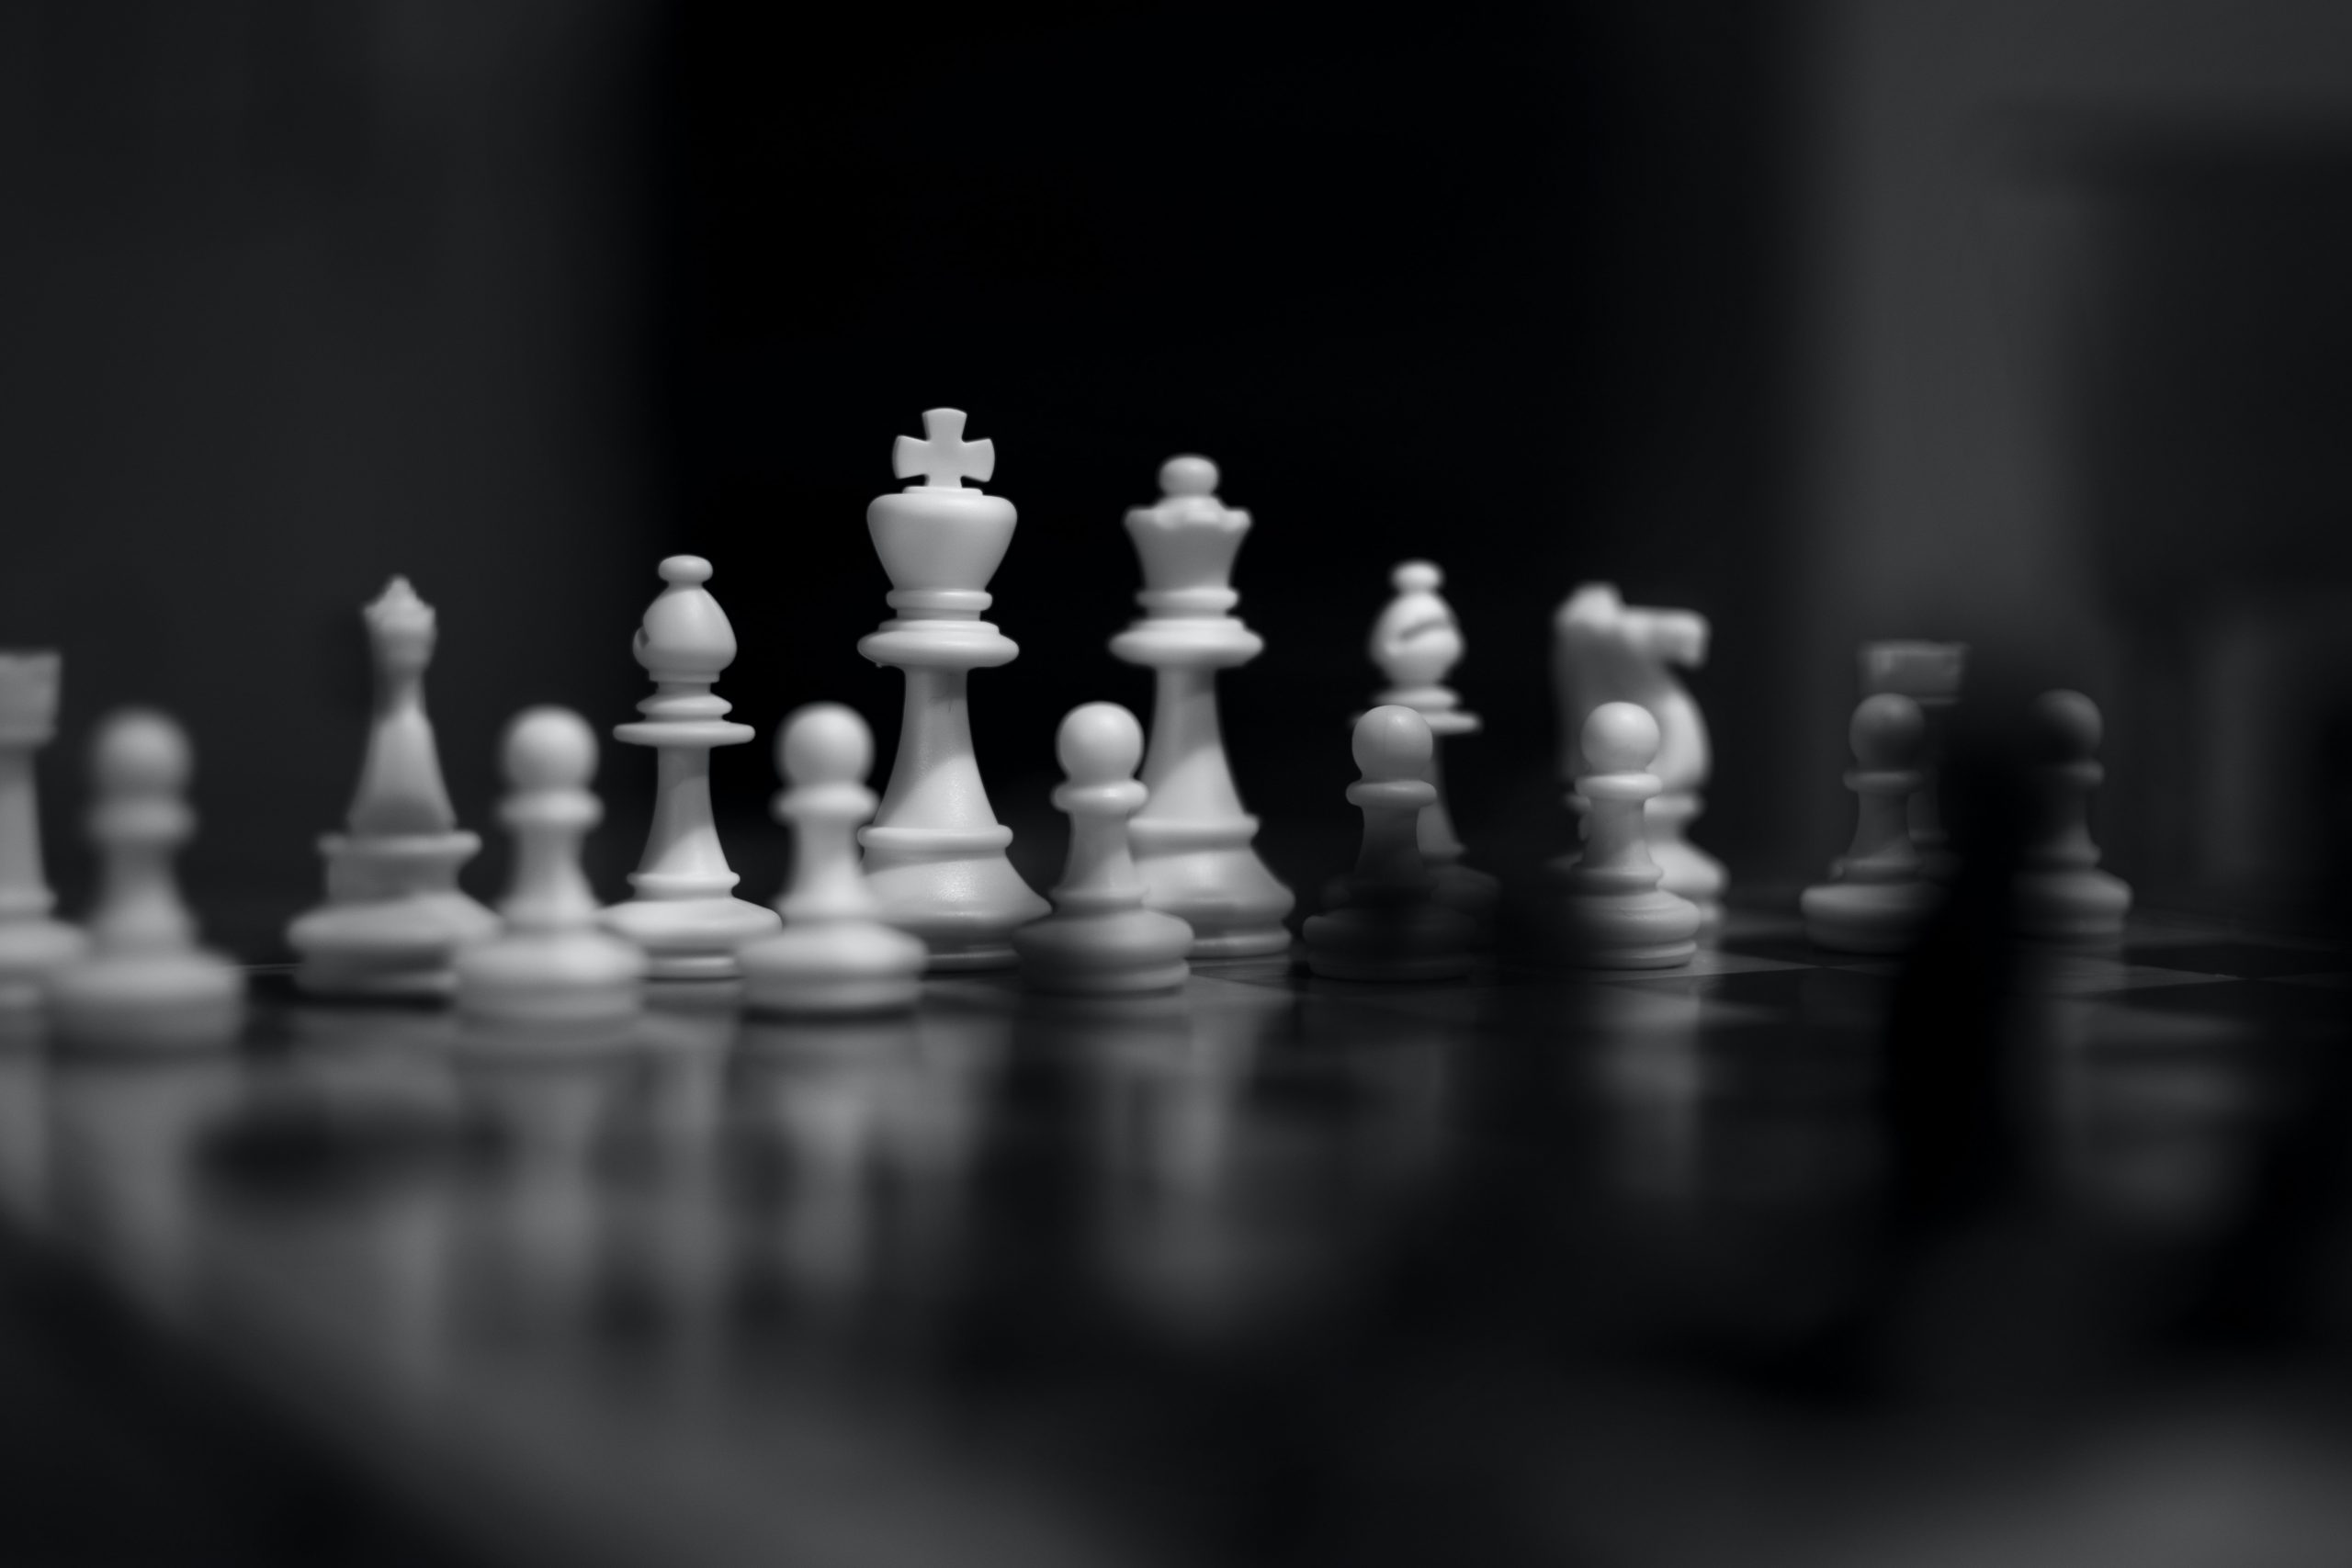 White chess piece on black table photo – Free Dubai - united arab emirates  Image on Unsplash